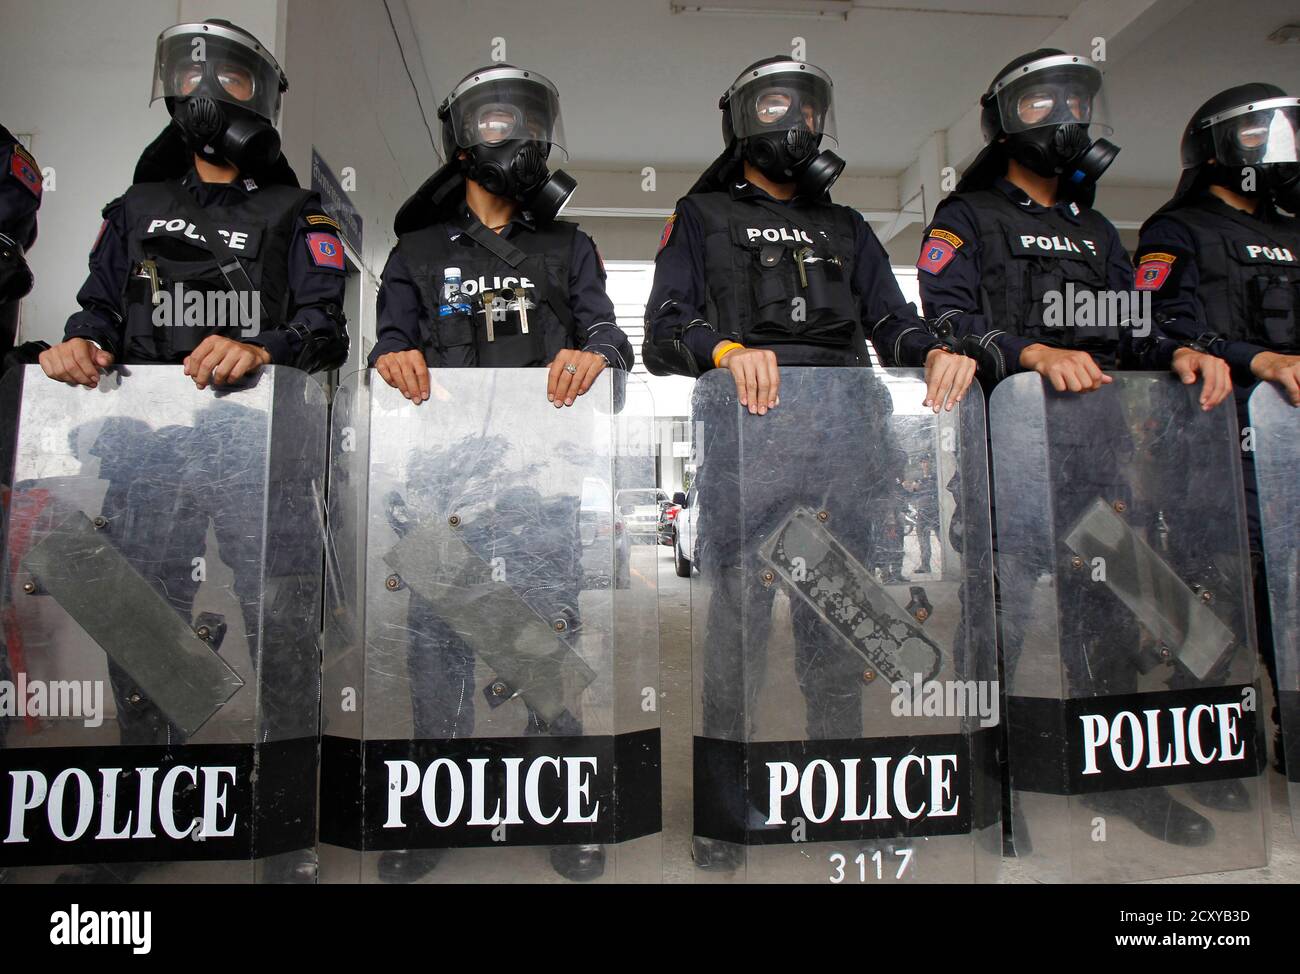 Riot Polizei Offiziere, Gasmasken, stehen mit ihren Schilden während einer Demonstration für die Medien im Royal Thai Police Sport Club in Bangkok 7. Januar 2014. Polizei organisiert die Medien-Demonstration, Tränengas und Gummigeschossen zu präsentieren, die einzige Art von Waffen, die Behörden sagen, für die Kontrolle von Menschenmengen Situationen verwendet wird. Polizei fügte hinzu, dass kein Aufruhr Polizisten dürfen scharfe Munition zu tragen. Laut den Behörden werden 20.000 Polizisten, unterstützt von Truppen, in den Straßen am 13. Januar, der erste Tag der geplanten "Abschaltung" bereitgestellt. REUTERS/Guenter Subprasom (T Stockfoto